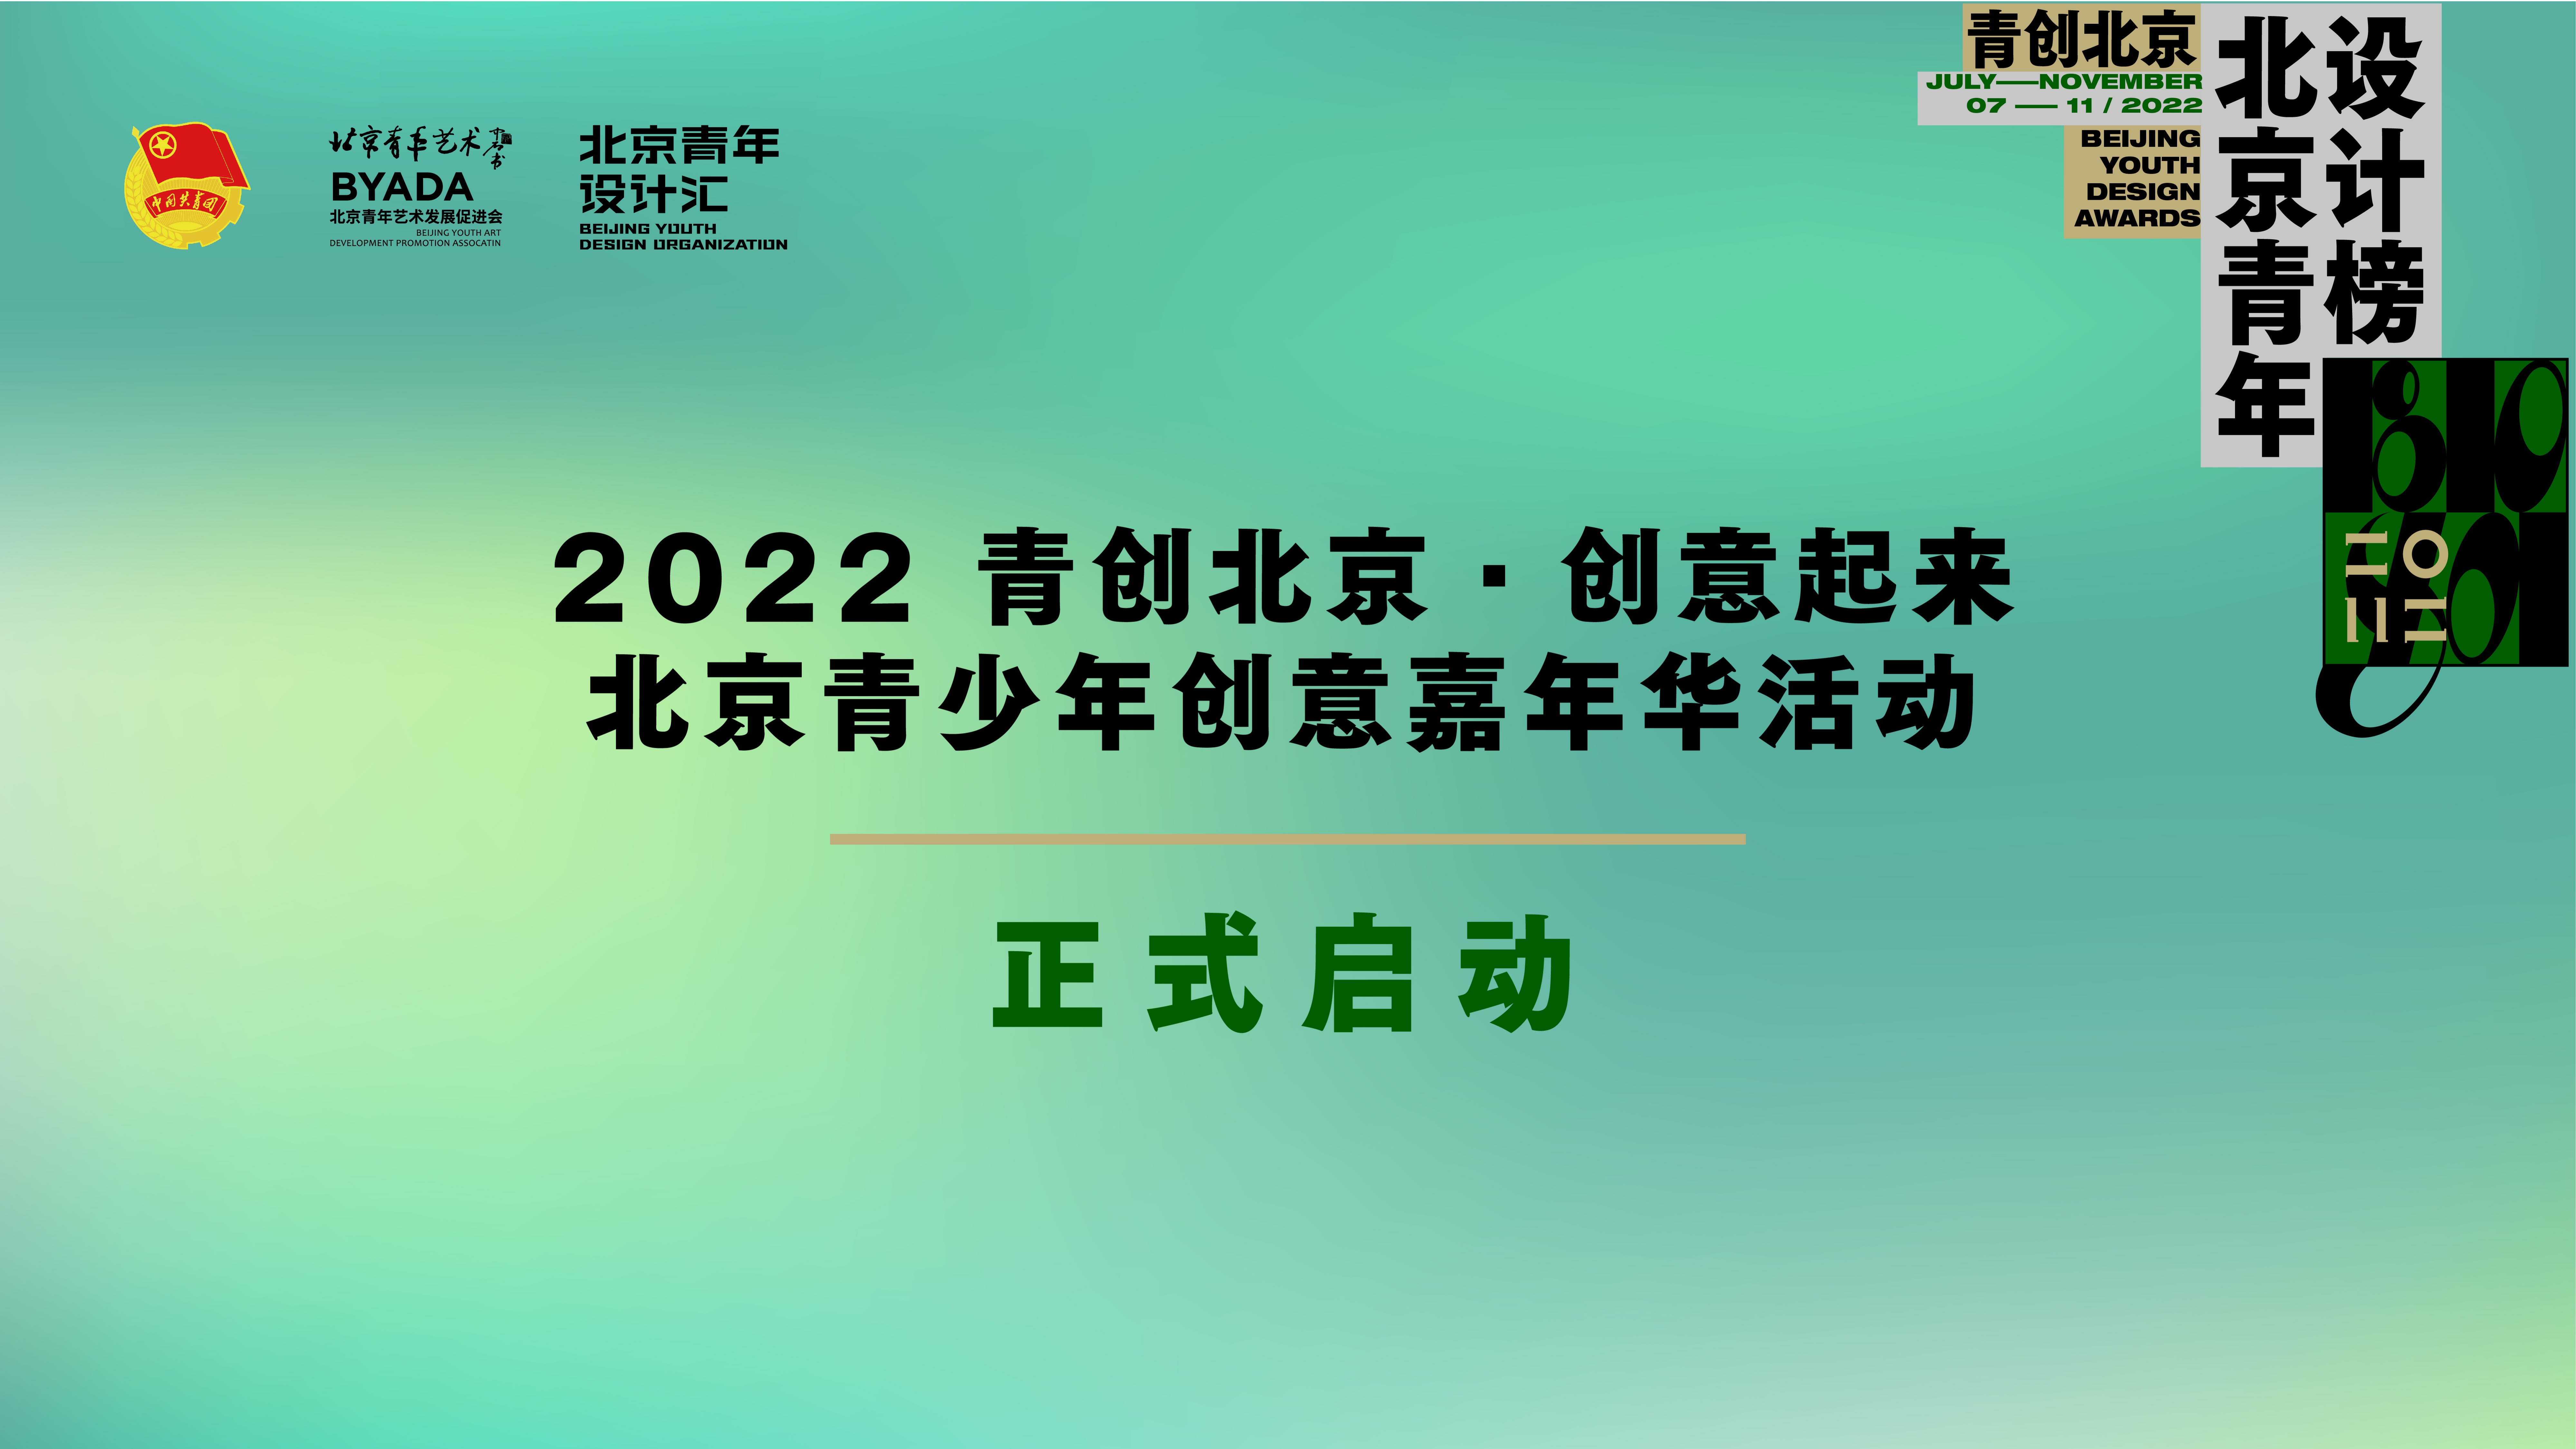 2022“青创北京·创意起来”北京青少年创意嘉年华活动正式启动